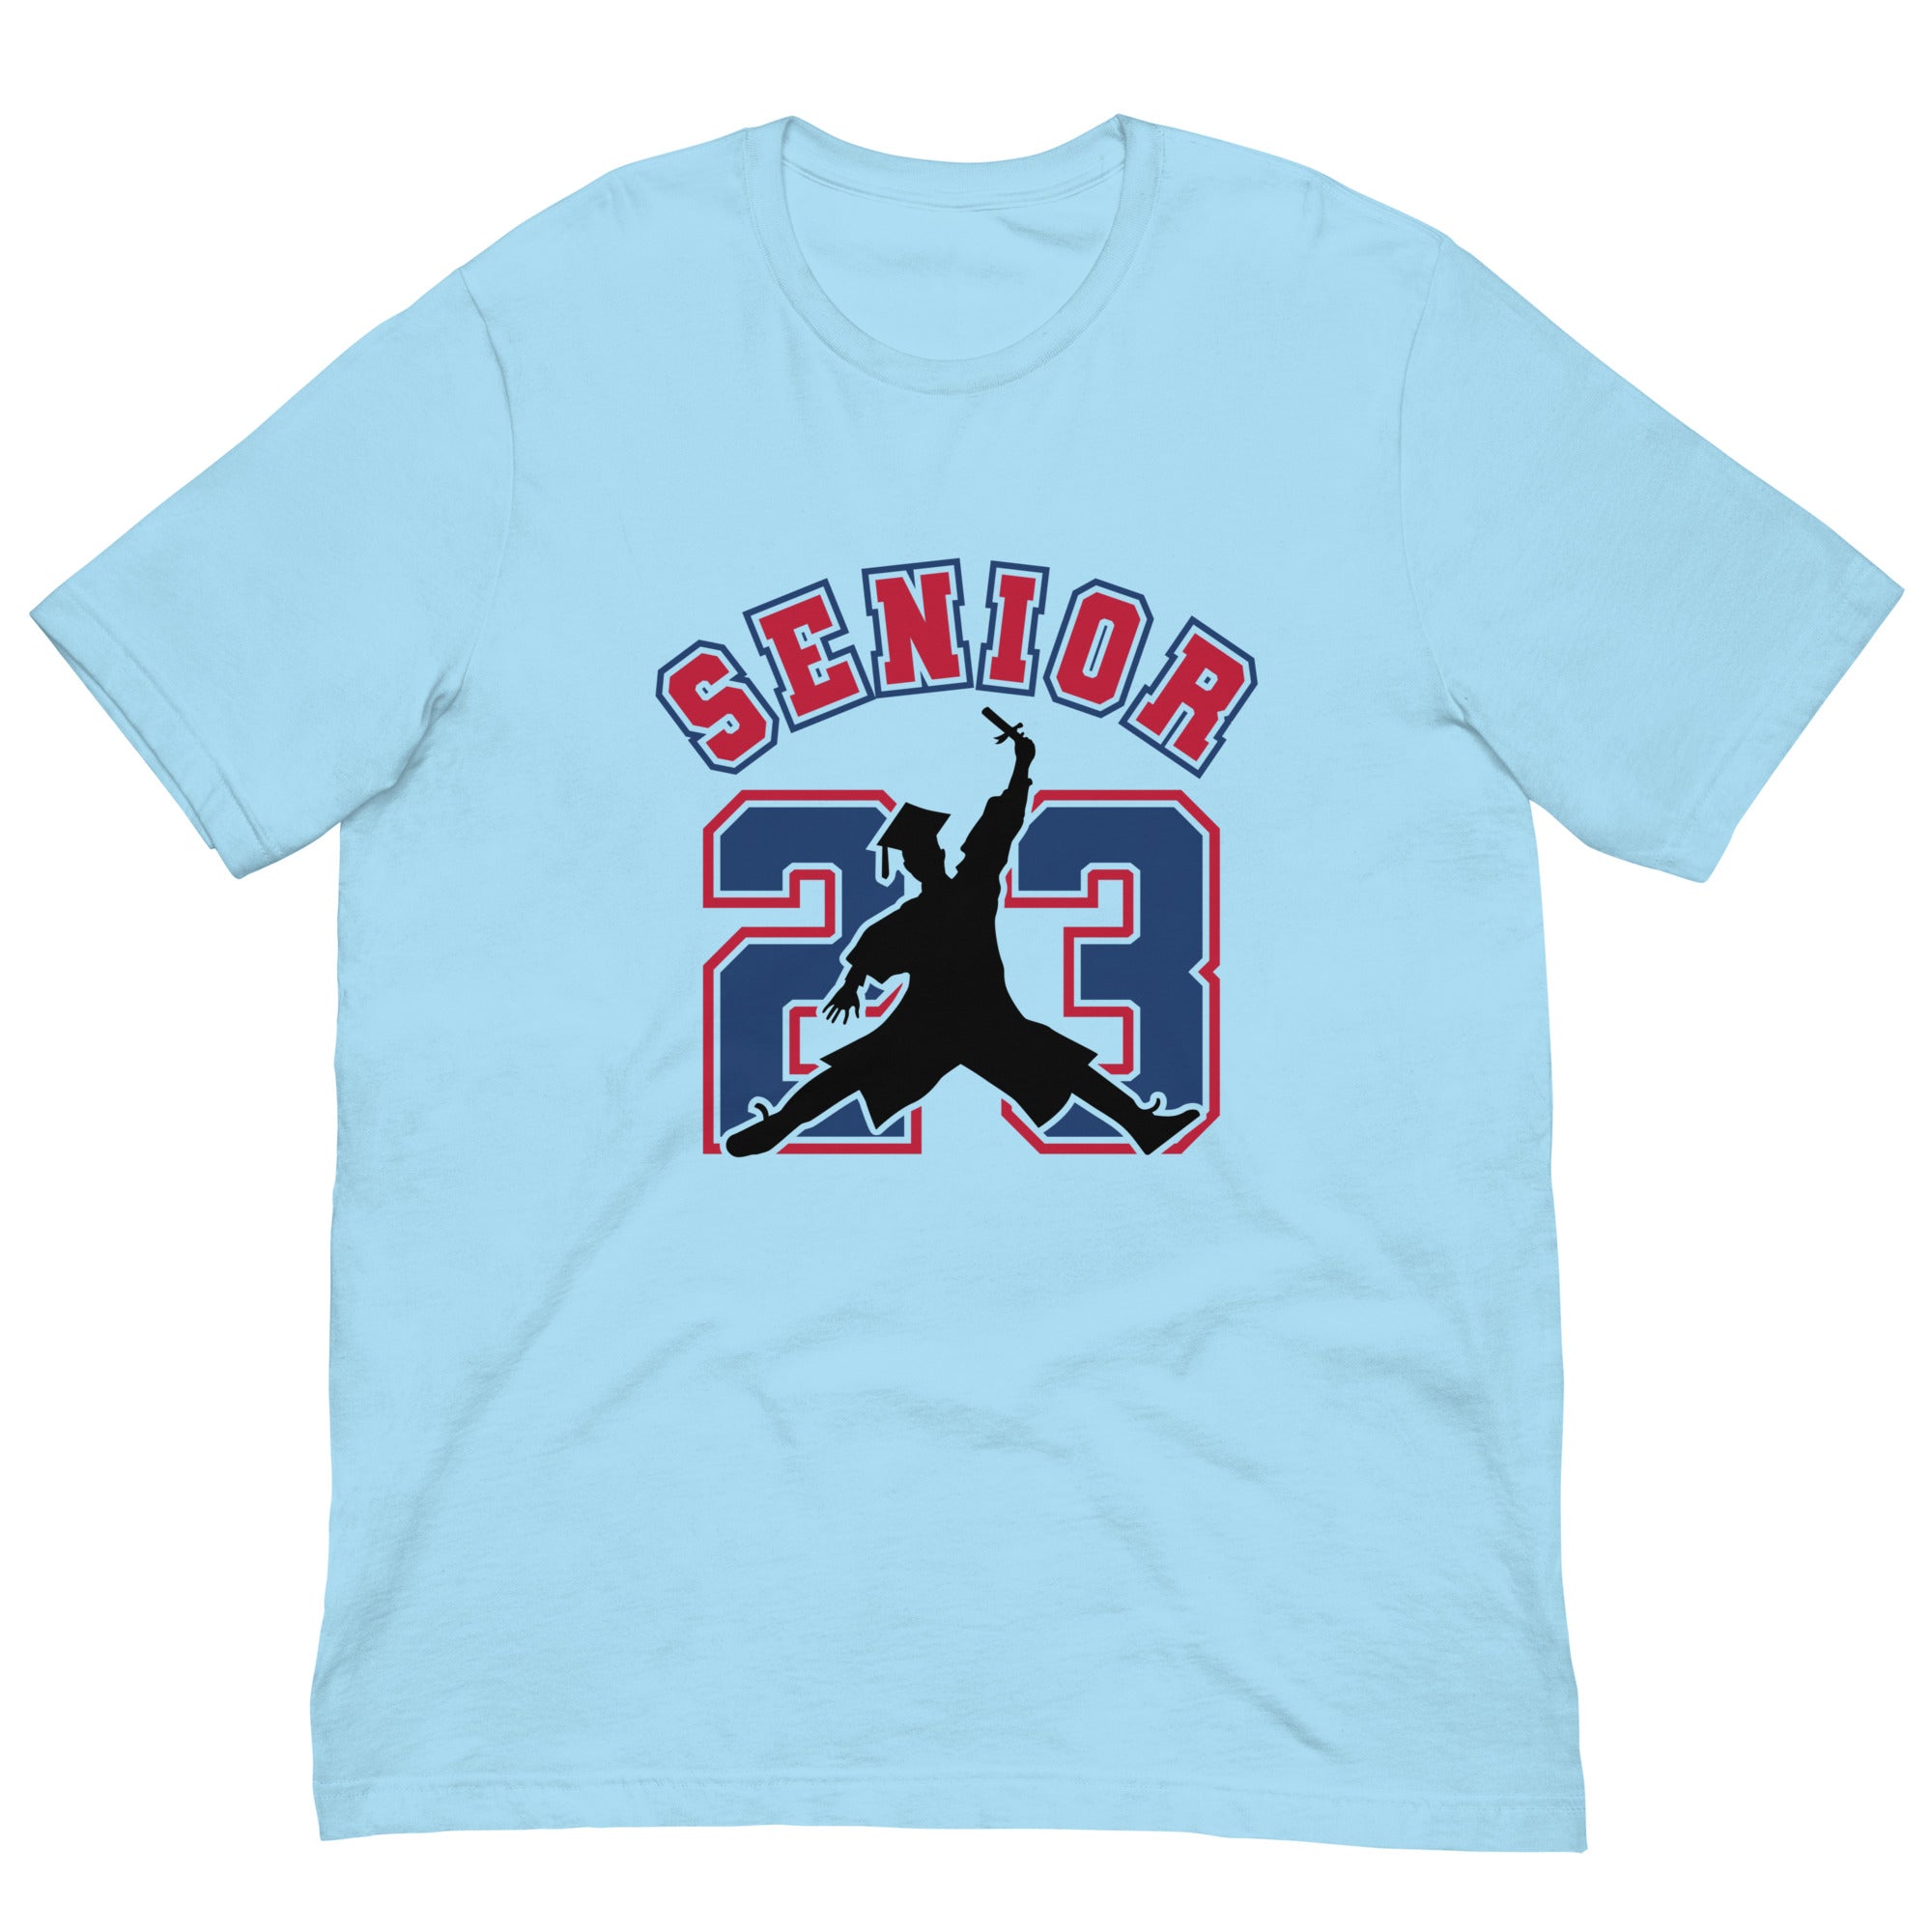 Senior 23 Unisex t-shirt (red/blue)